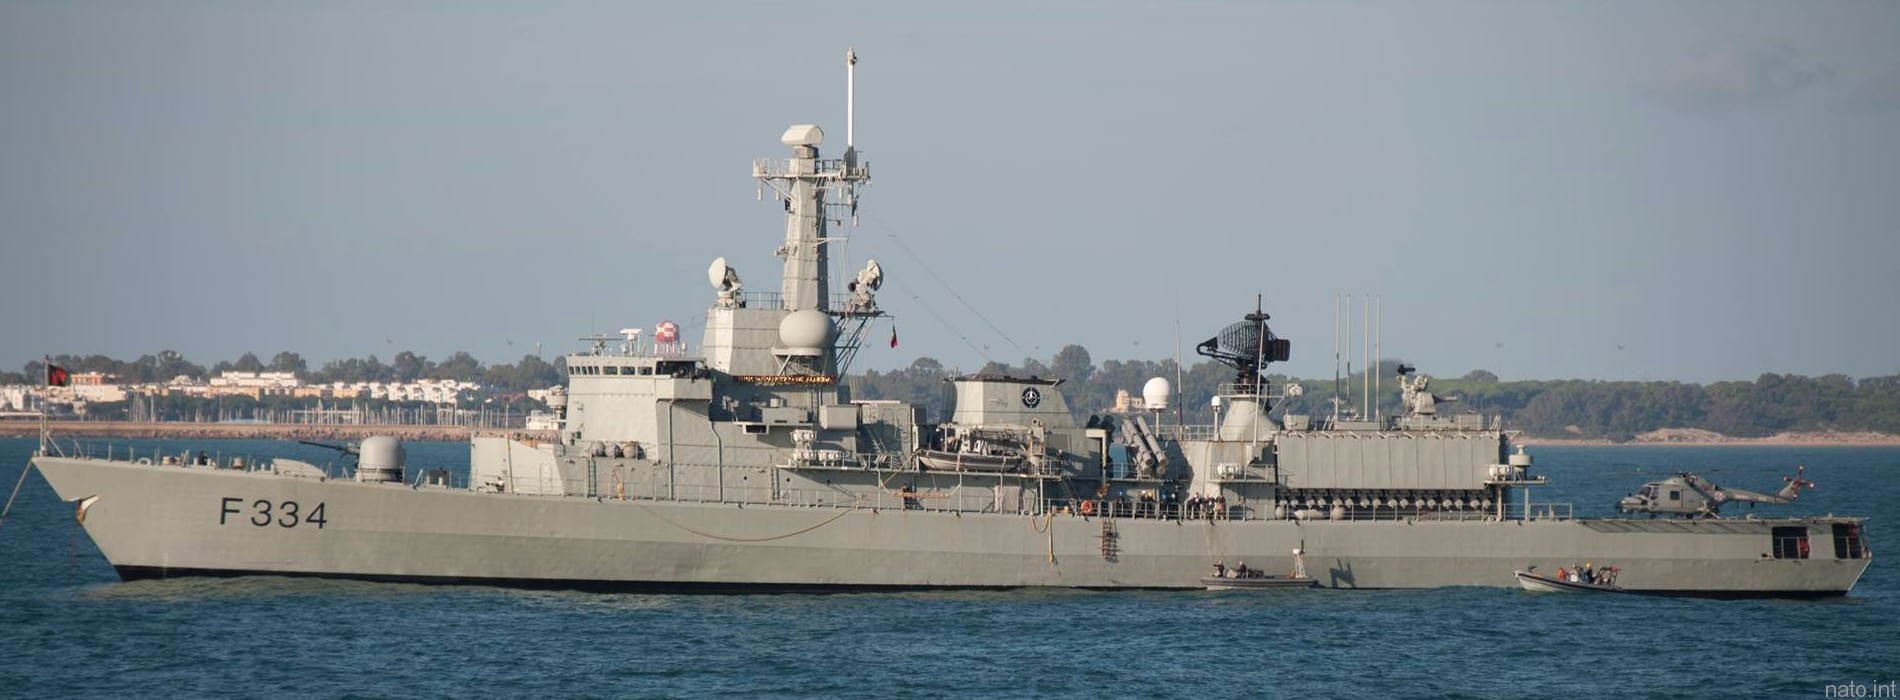 f-334 nrp dom francisco de almeida karel doorman class frigate portuguese navy marinha 11